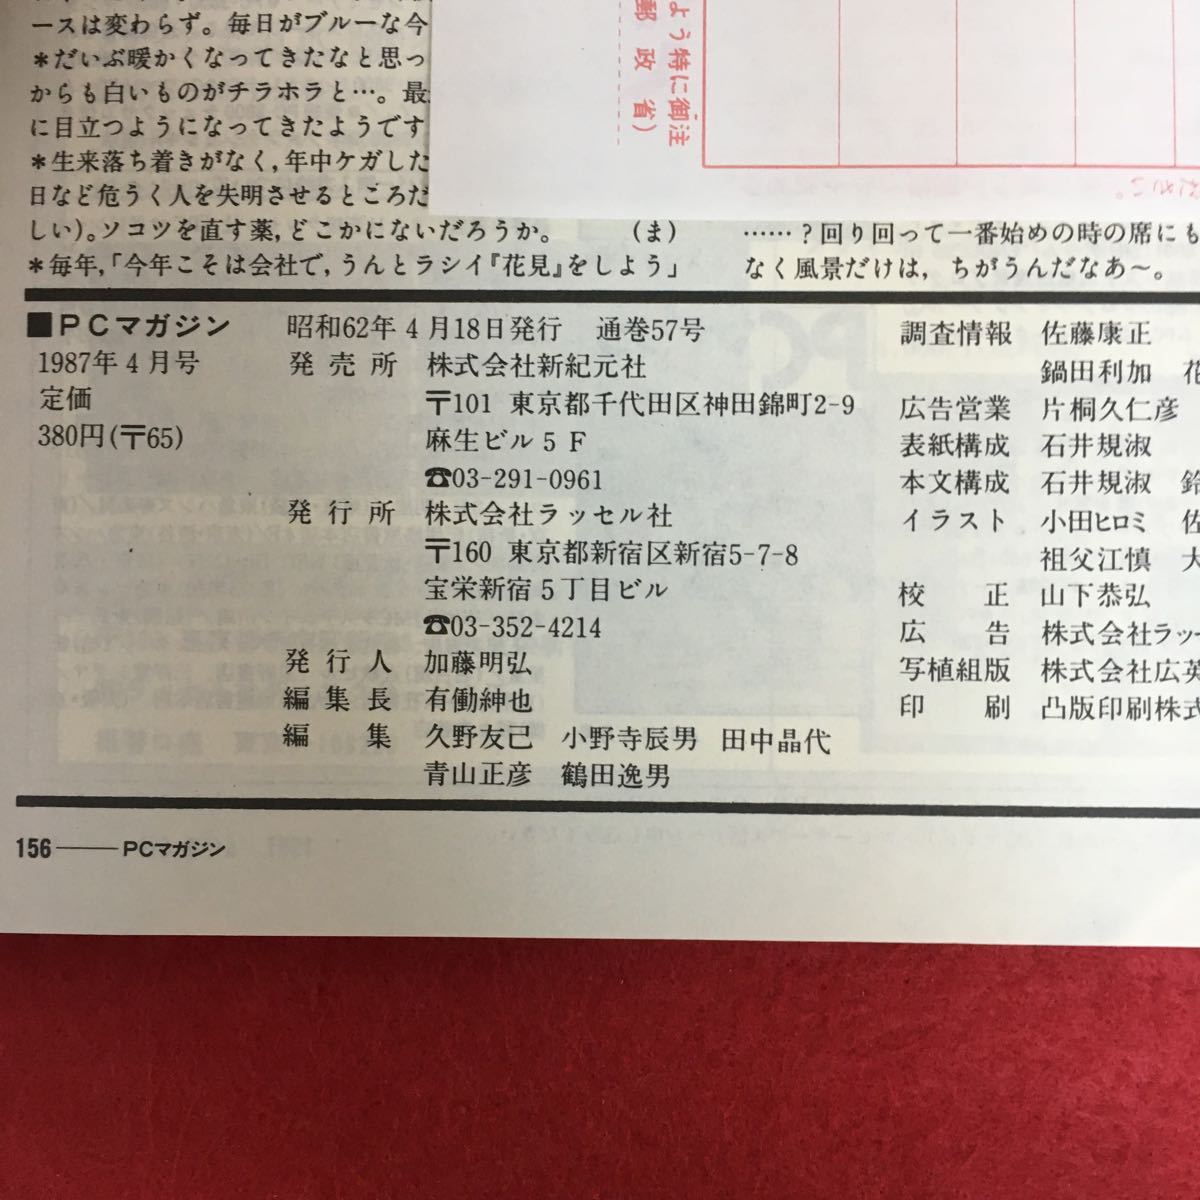 a-020 PC журнал 1987 год 9 месяц номер акционерное общество russell фирма Showa 62 год 5 месяц 18 день выпуск специальный выпуск :98 текстовой процессор изучение 9888EGGflaktaru др. retro персональный компьютер *5